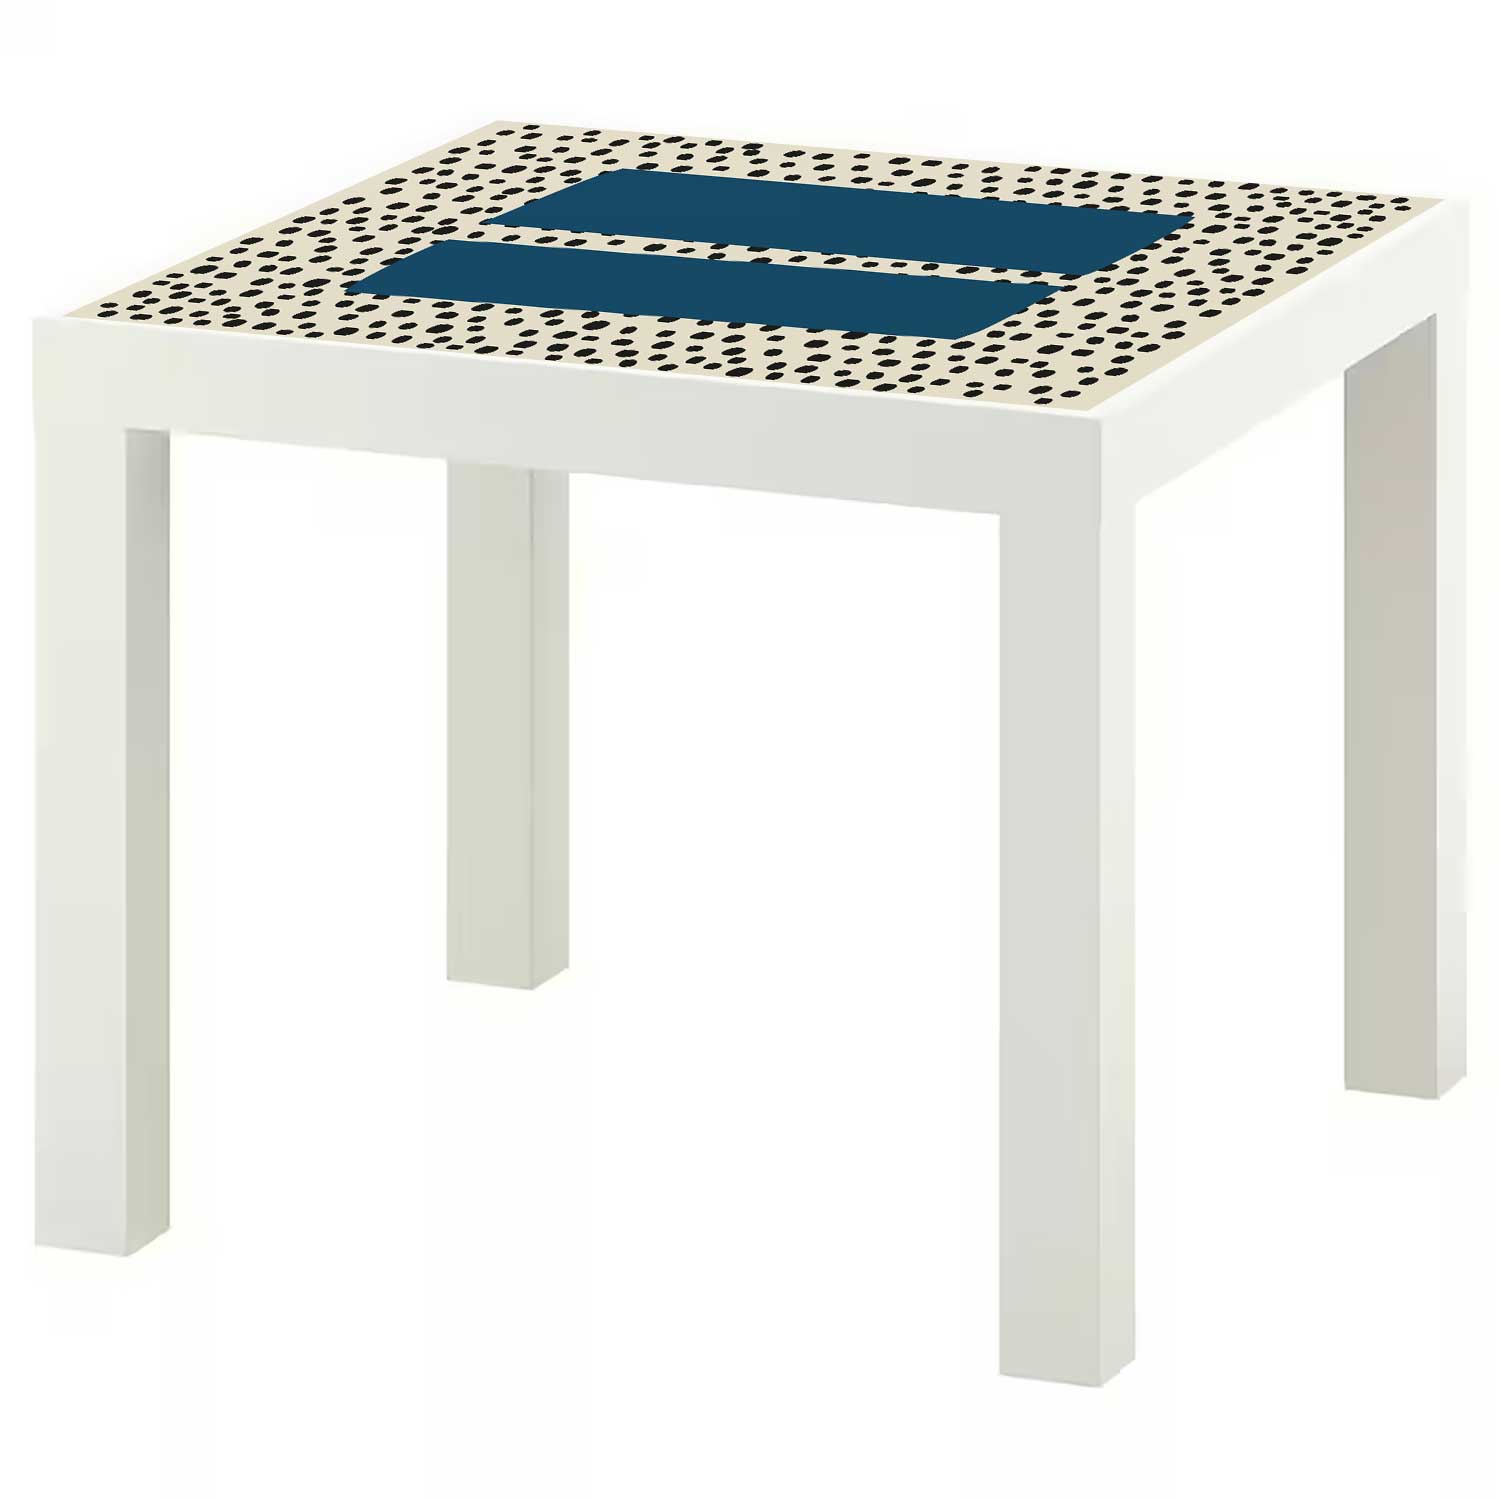 Möbelfolie für IKEA Lack Tisch 55x55 cm 'Pünktchen'